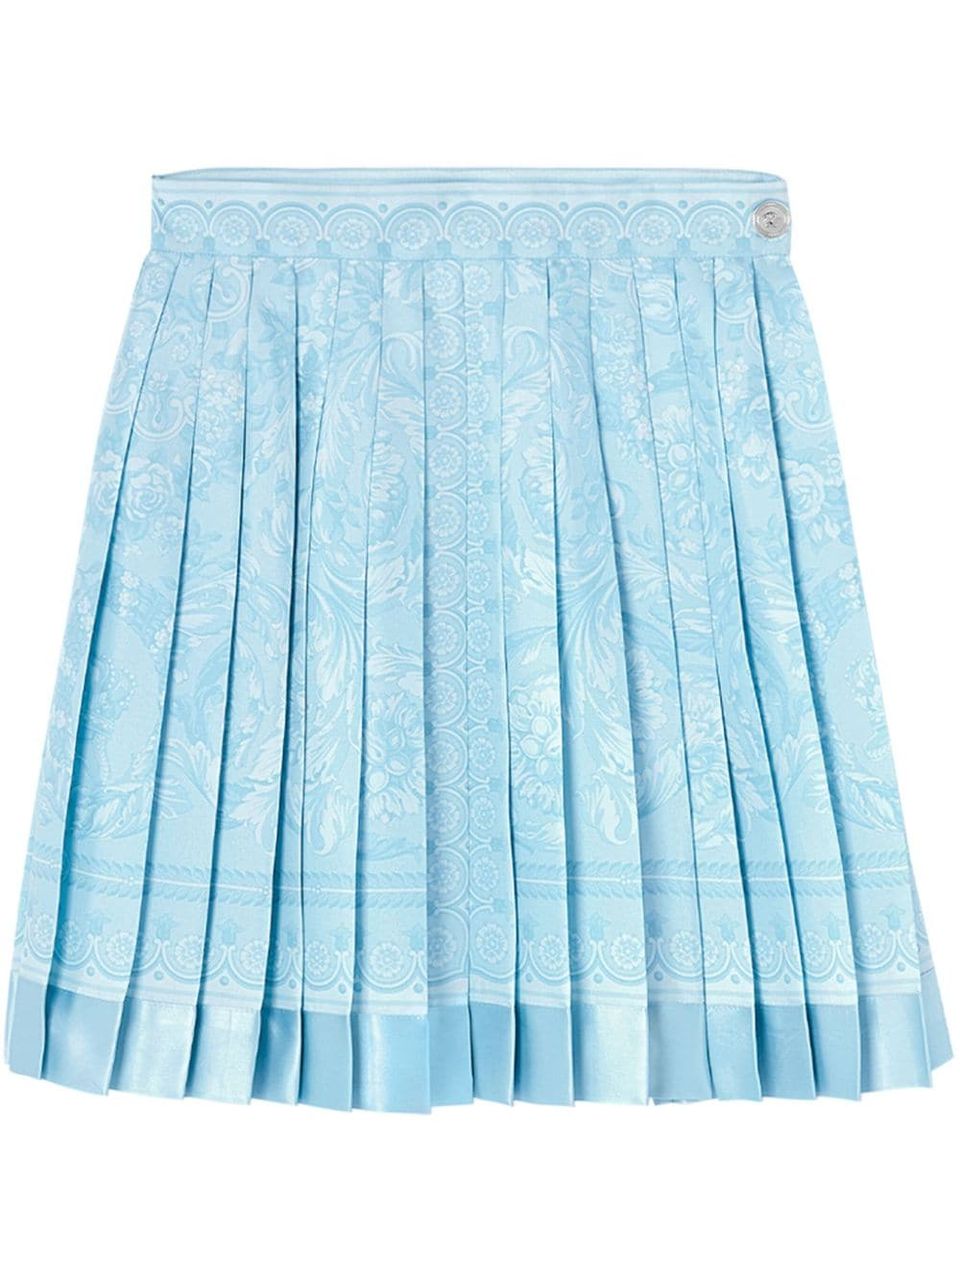 Barocco print skirt